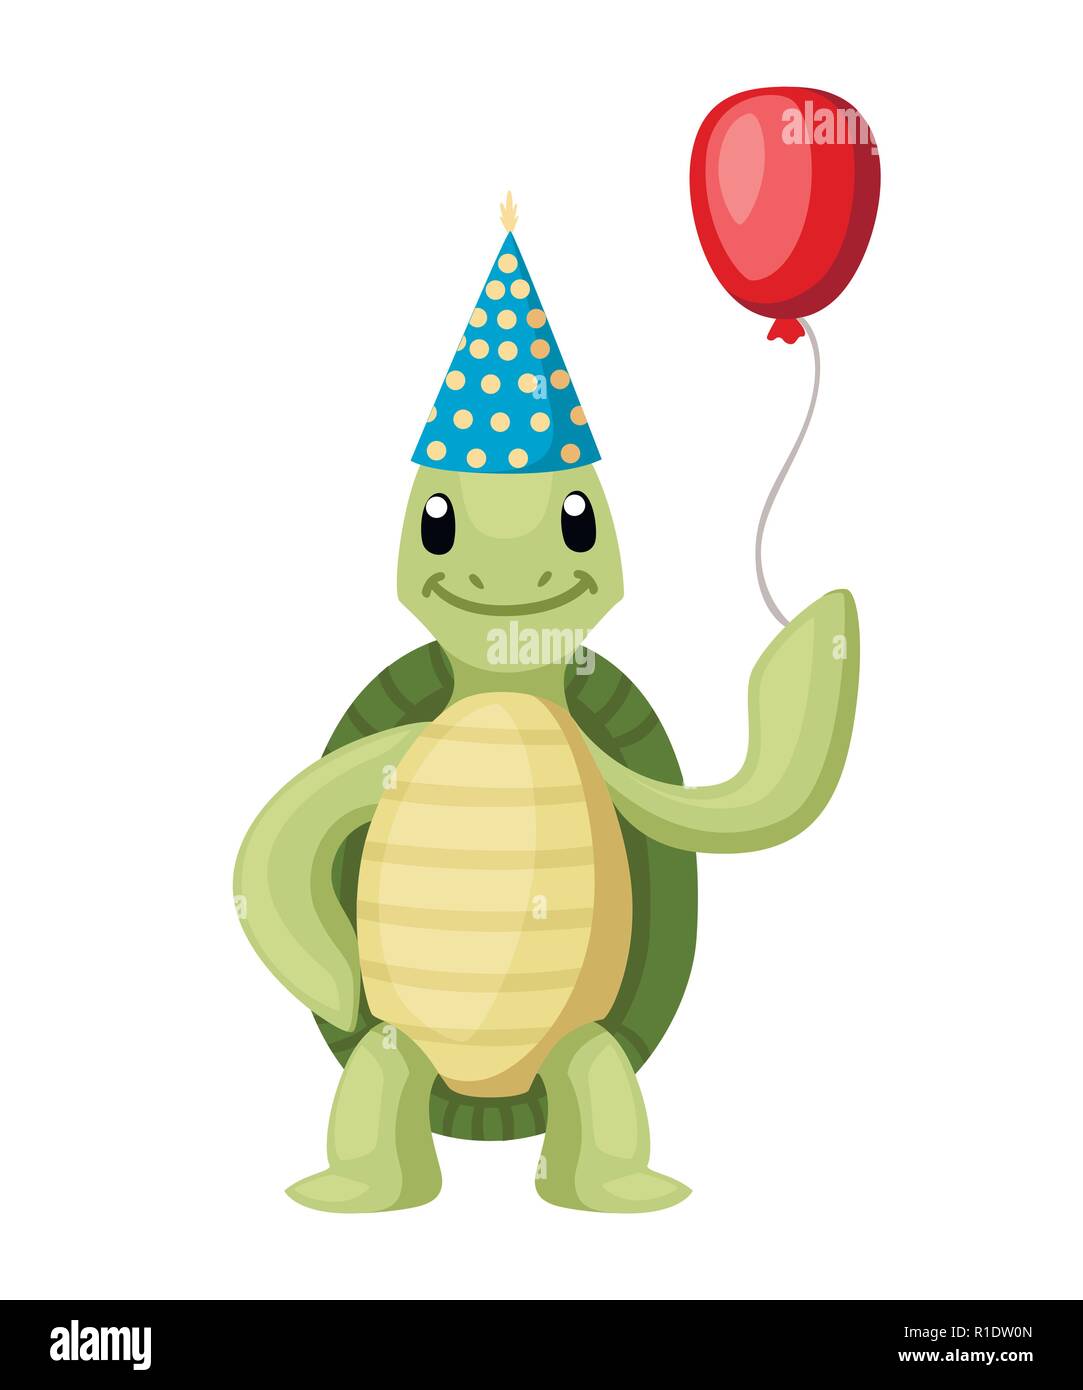 Happy niedliche Schildkröte stand mit Lächeln. Schildkröte halten Red Balloon mit Konus hat. Cartoon Character Design. Flache Vector Illustration auf weißen backgr isoliert Stock Vektor